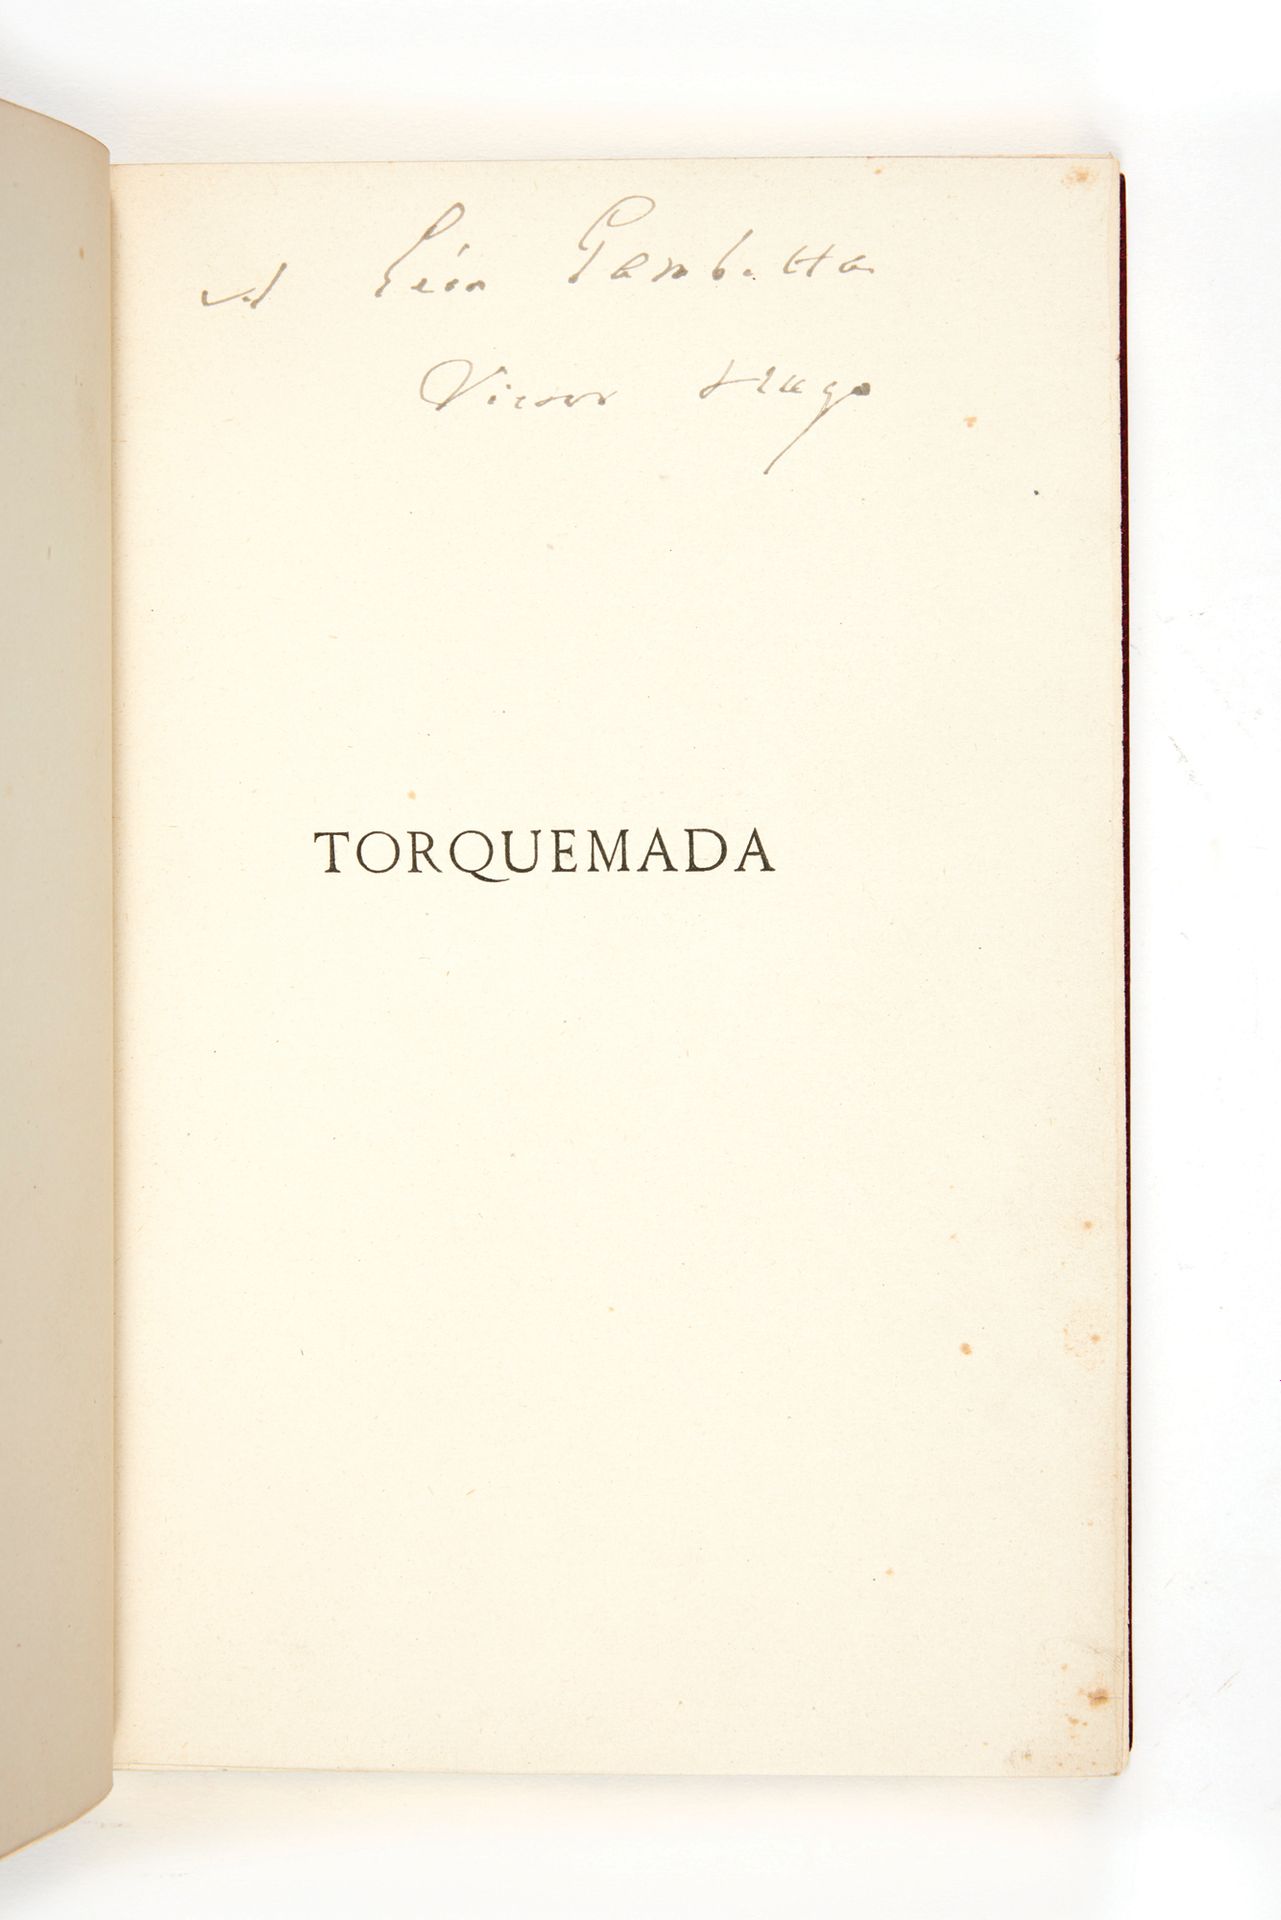 HUGO, victor. Torquemada. Drame. Paris, Calmann-Lévy, 1882 ; in-8 maroquin jansé&hellip;